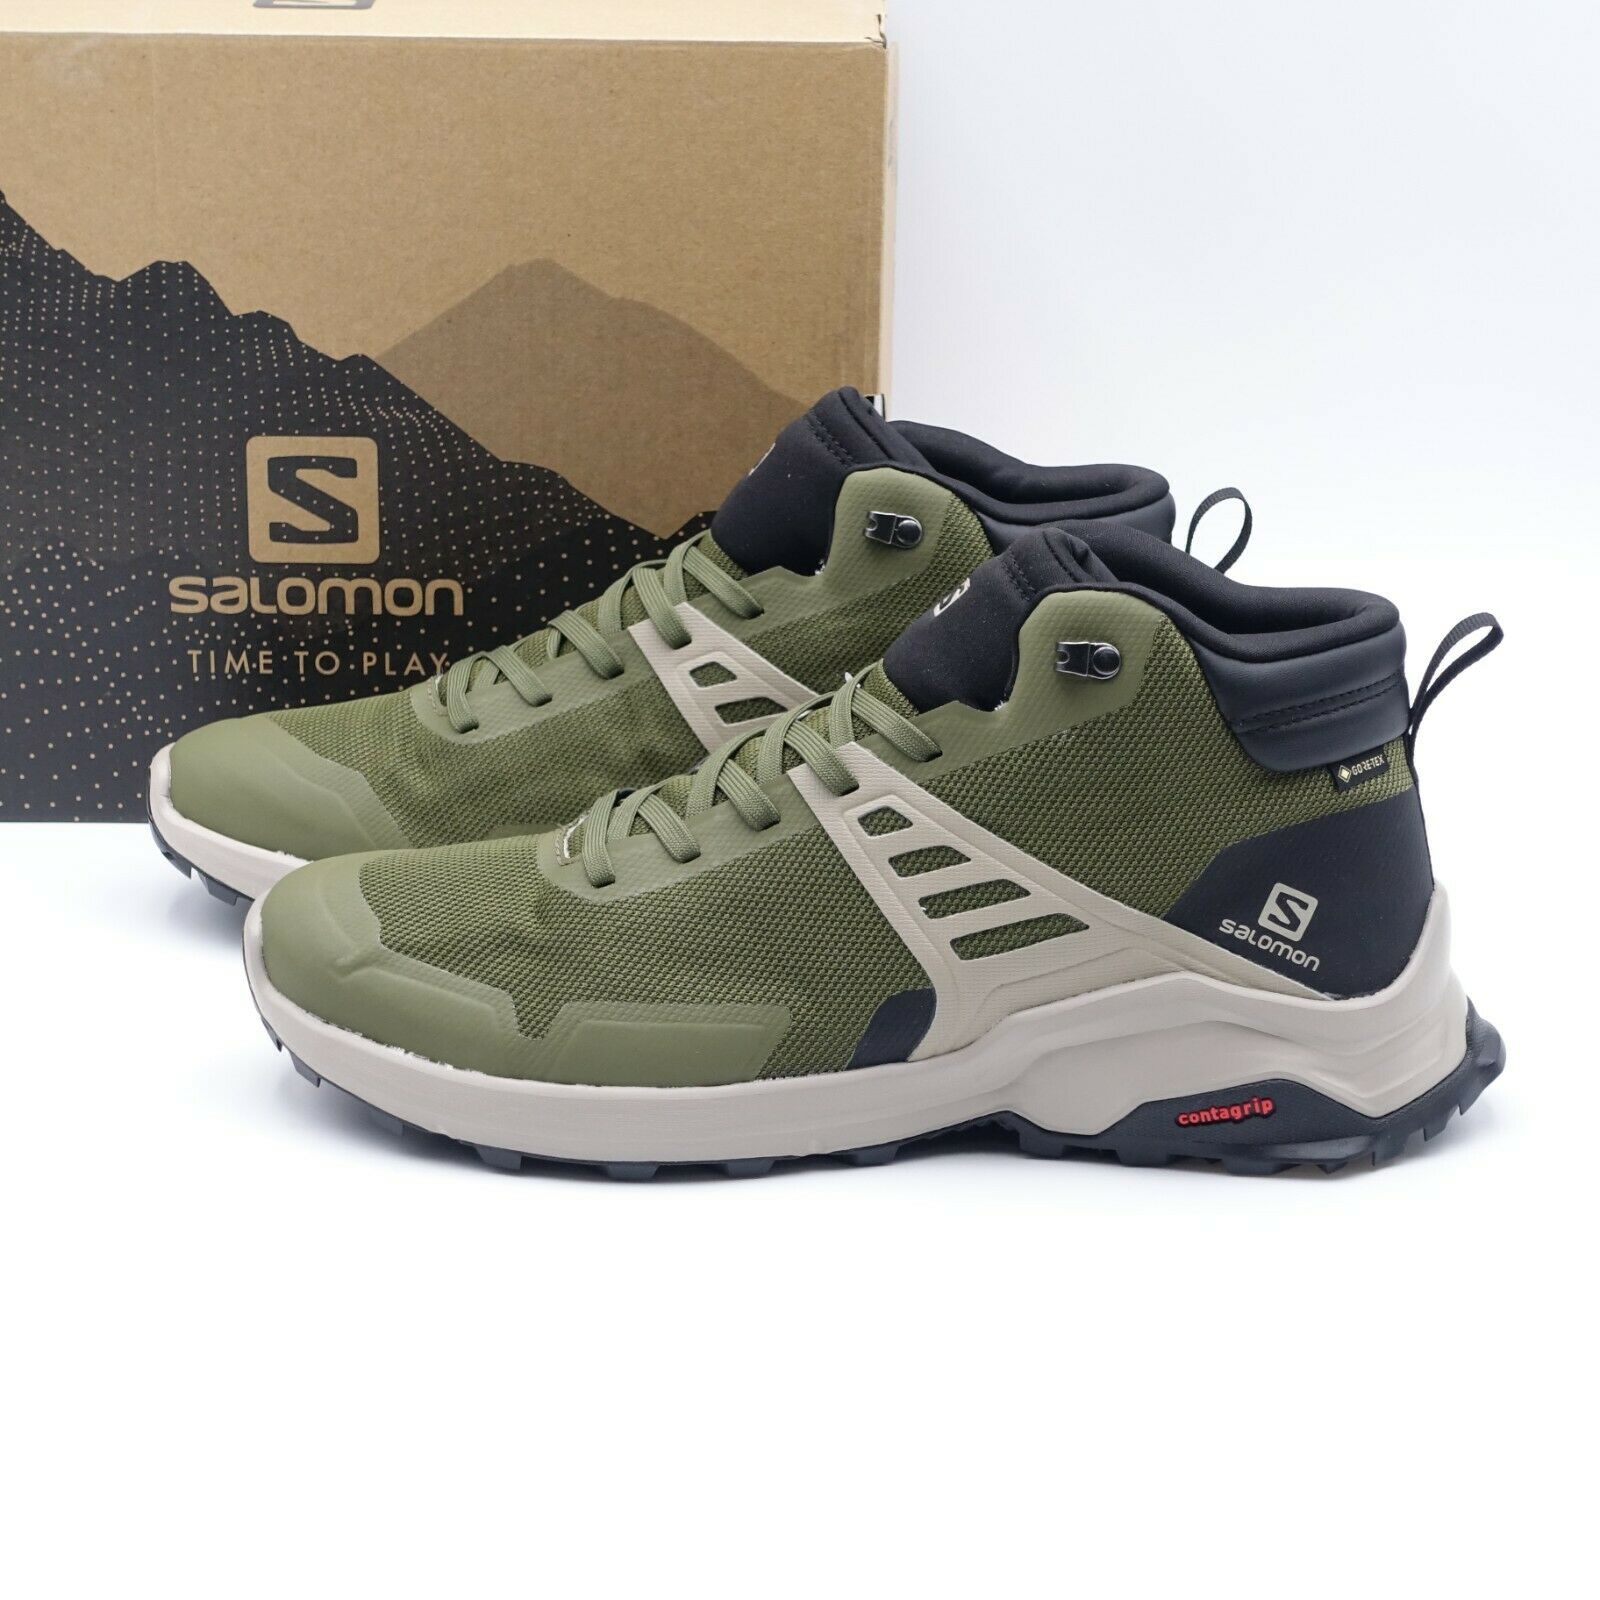 Size 12 Men's Salomon X Raise MID GTX Hiking Shoes 410958 Olive Night/Black/Kaki